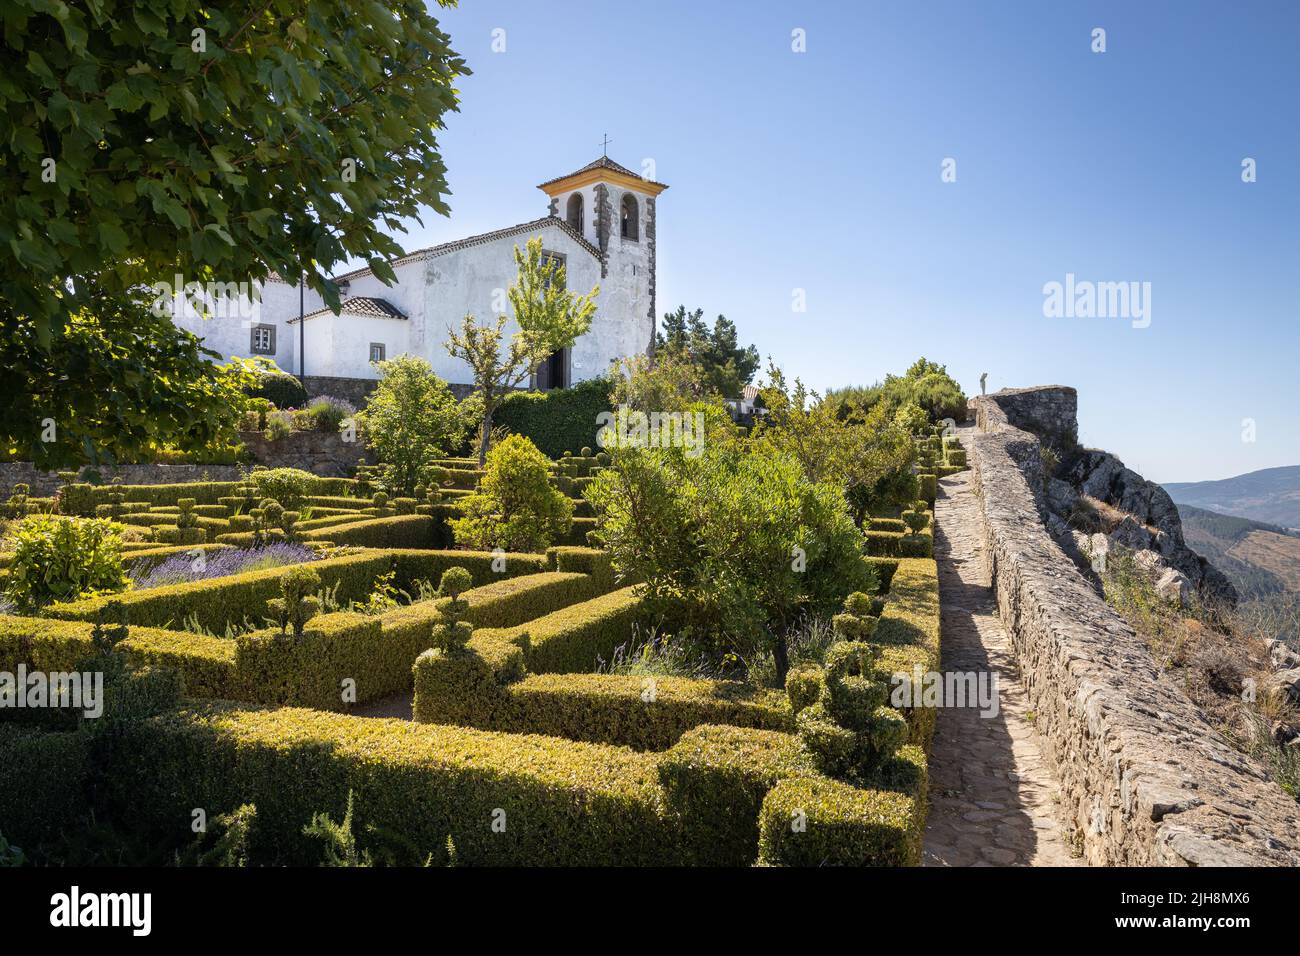 Gardens at the church Igreja Santa Maria in Marvão, Alentejo, Portugal Stock Photo